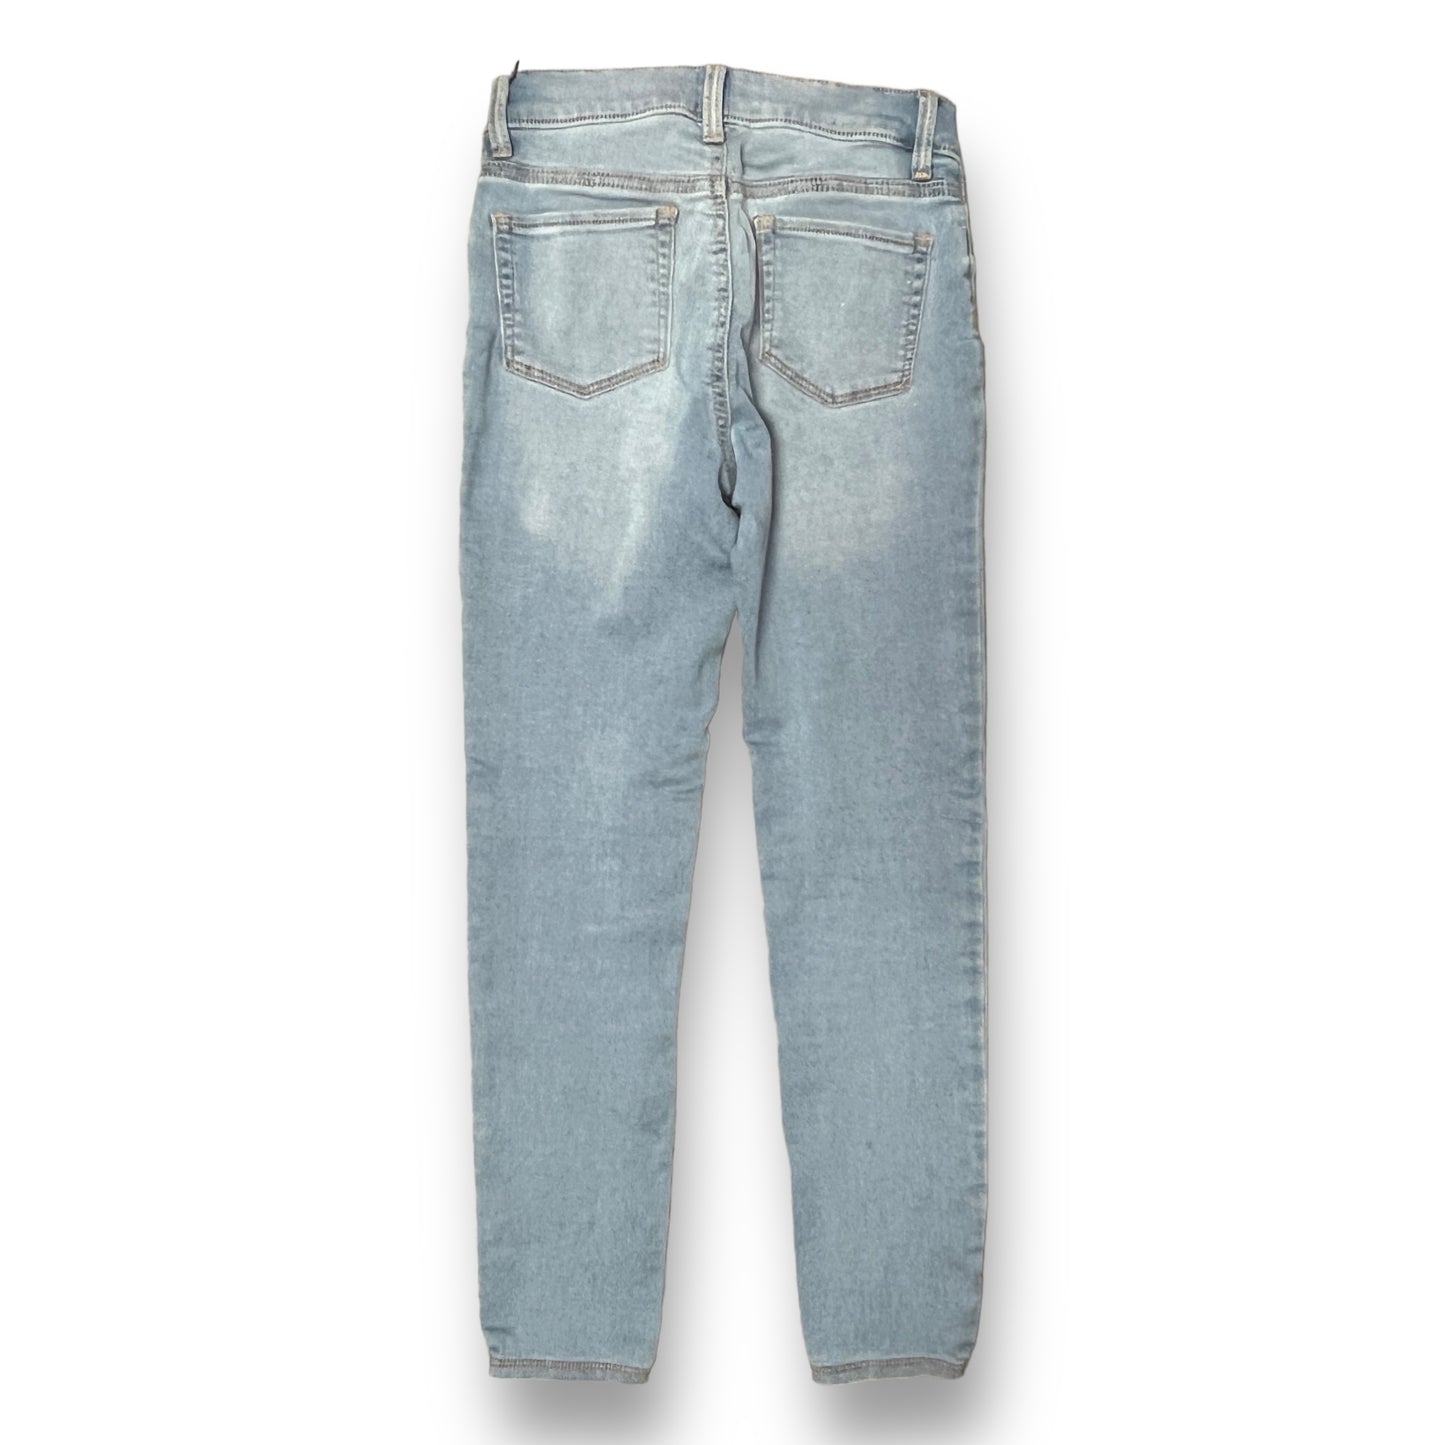 Girls Gap Size 12 Light Blue Stretch Jegging Jeans